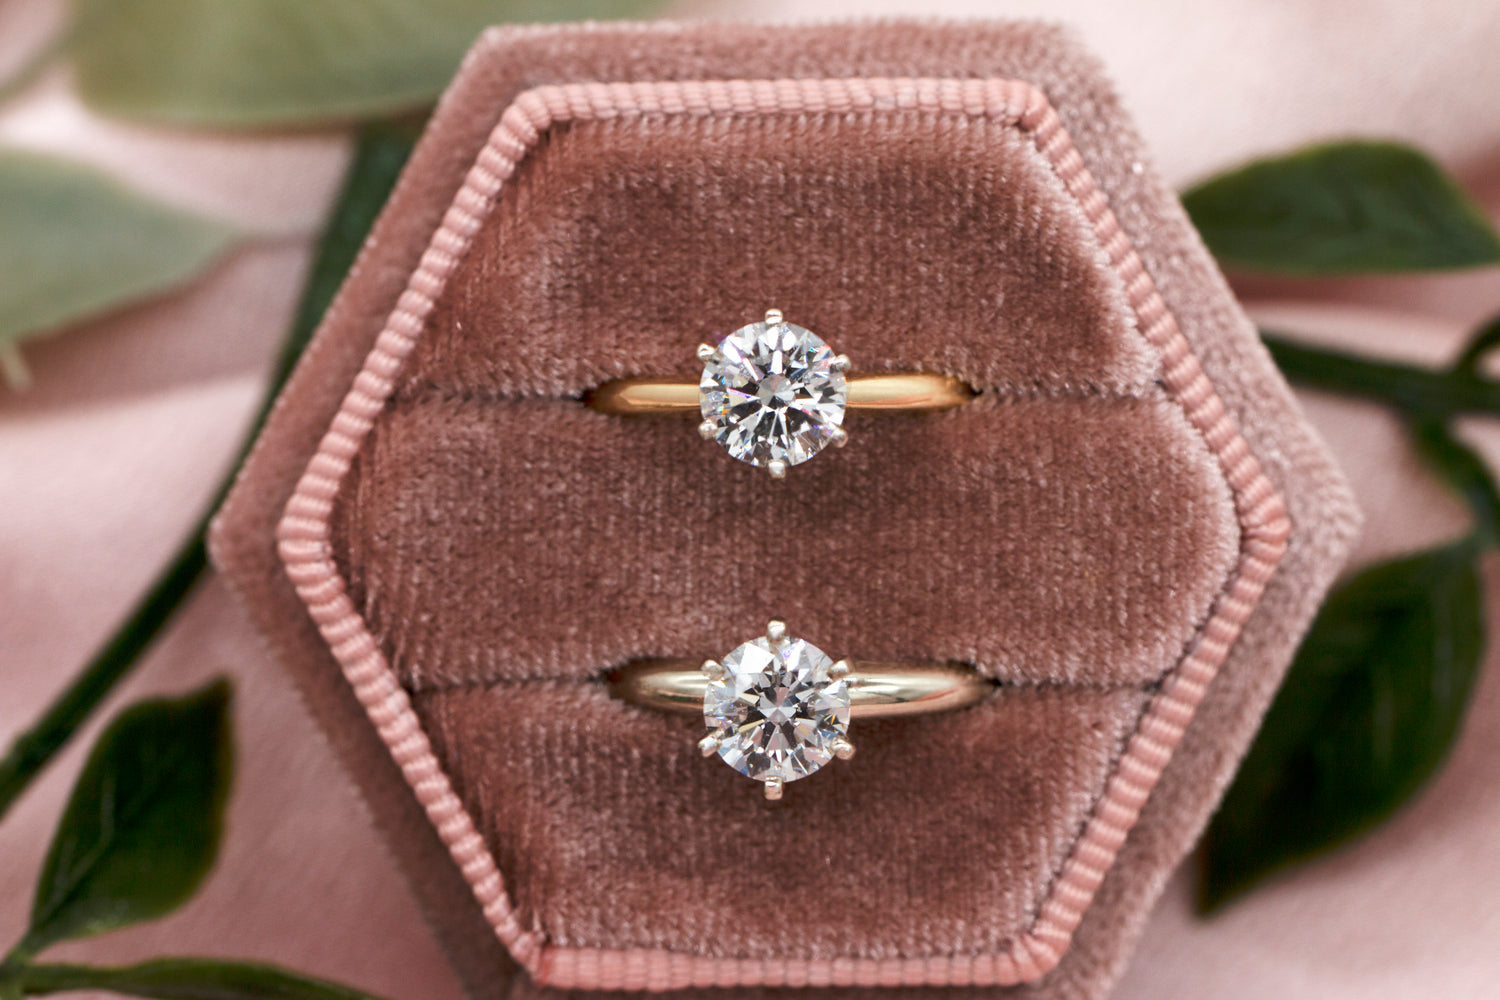 Photo of Lab Grown Diamond rings in velvet ring box. Engagement rings for sale